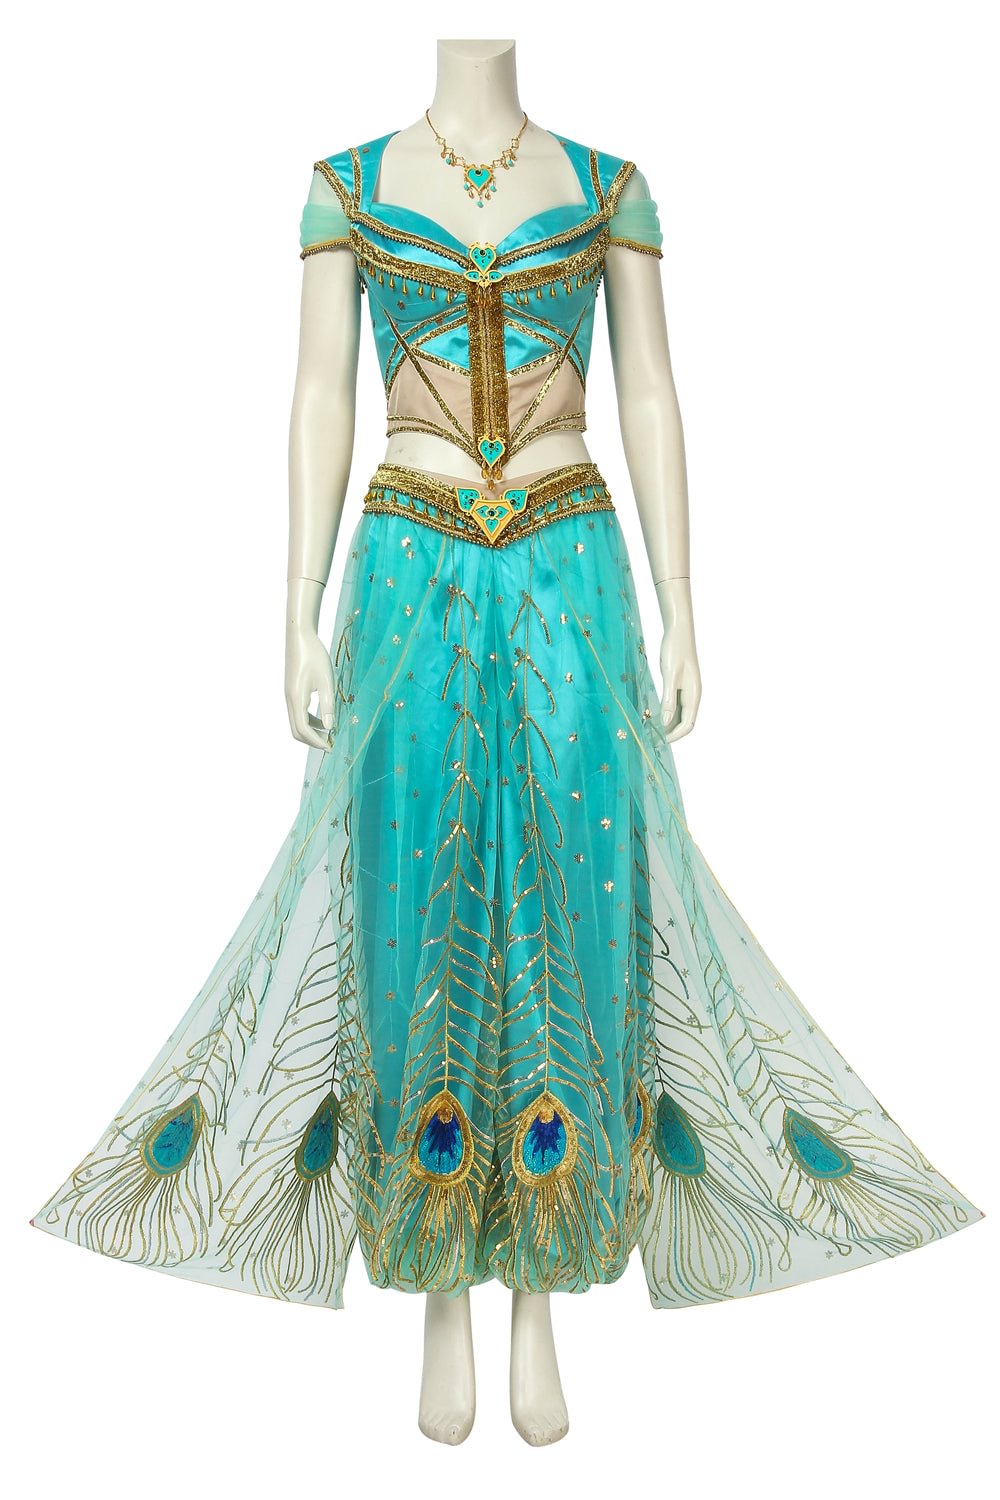 Aladdin Princess Jasmine Cosplay Costume